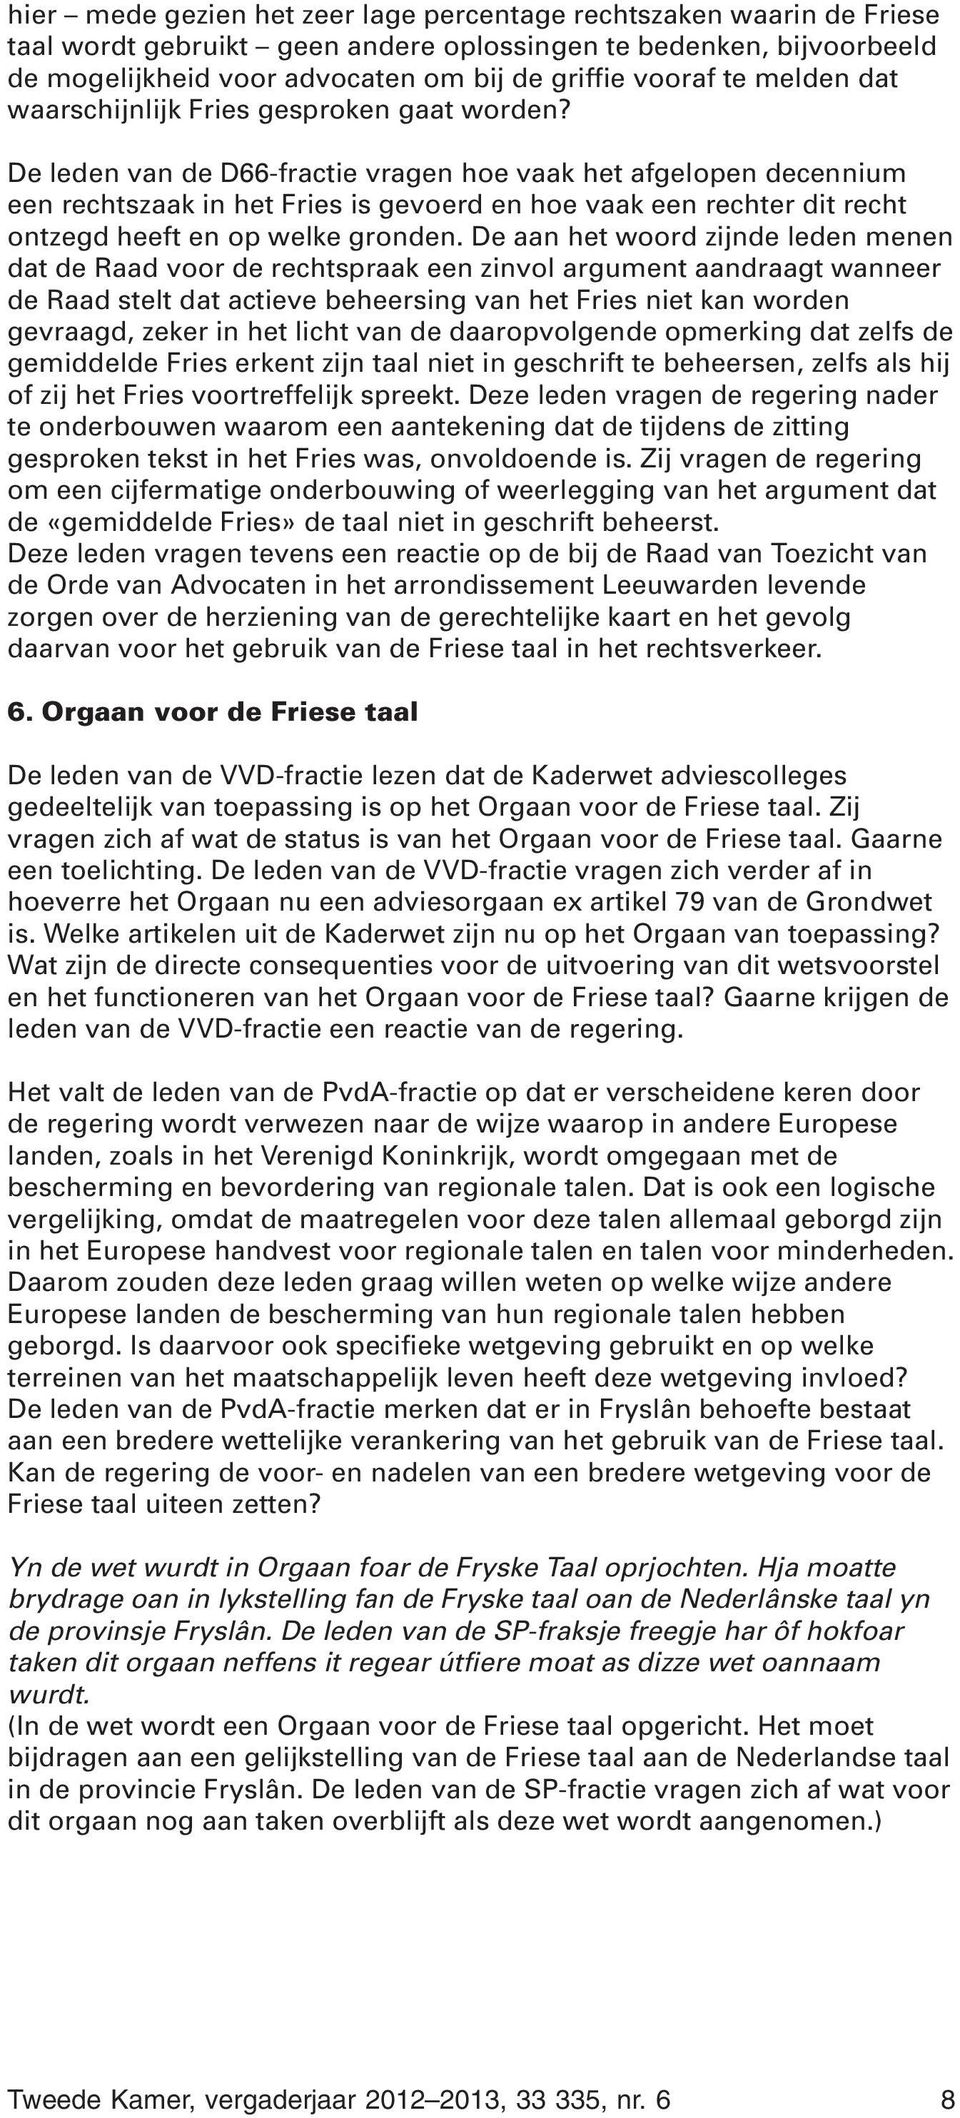 De leden van de D66-fractie vragen hoe vaak het afgelopen decennium een rechtszaak in het Fries is gevoerd en hoe vaak een rechter dit recht ontzegd heeft en op welke gronden.